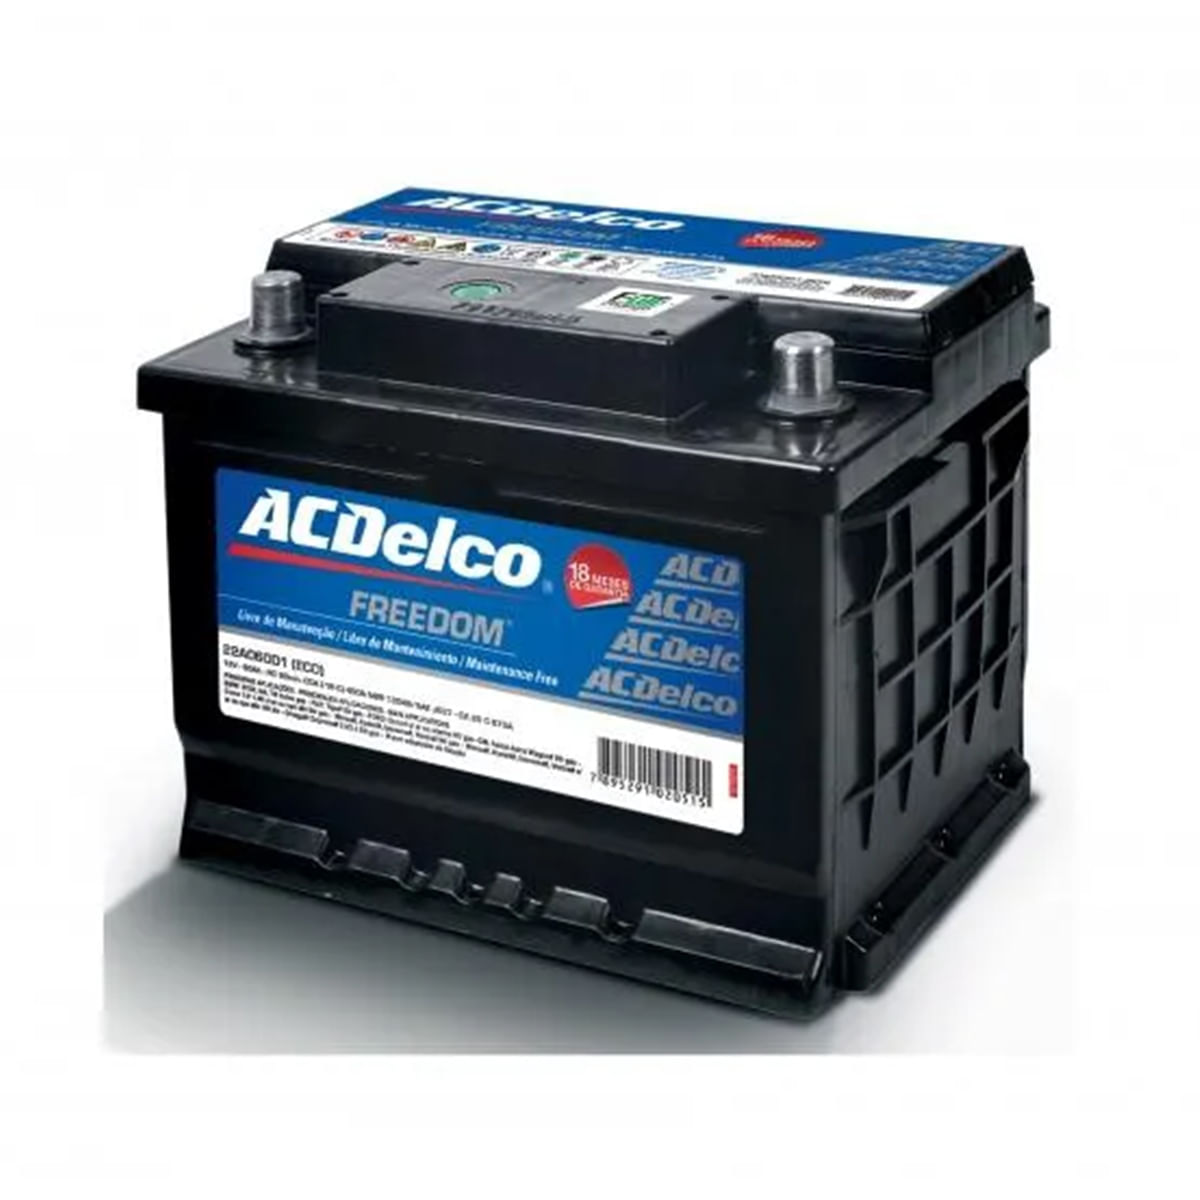 Bateria AcDelco 40 Amperes Caixa Alta Lado Positivo Direito 18 Meses de Garantia